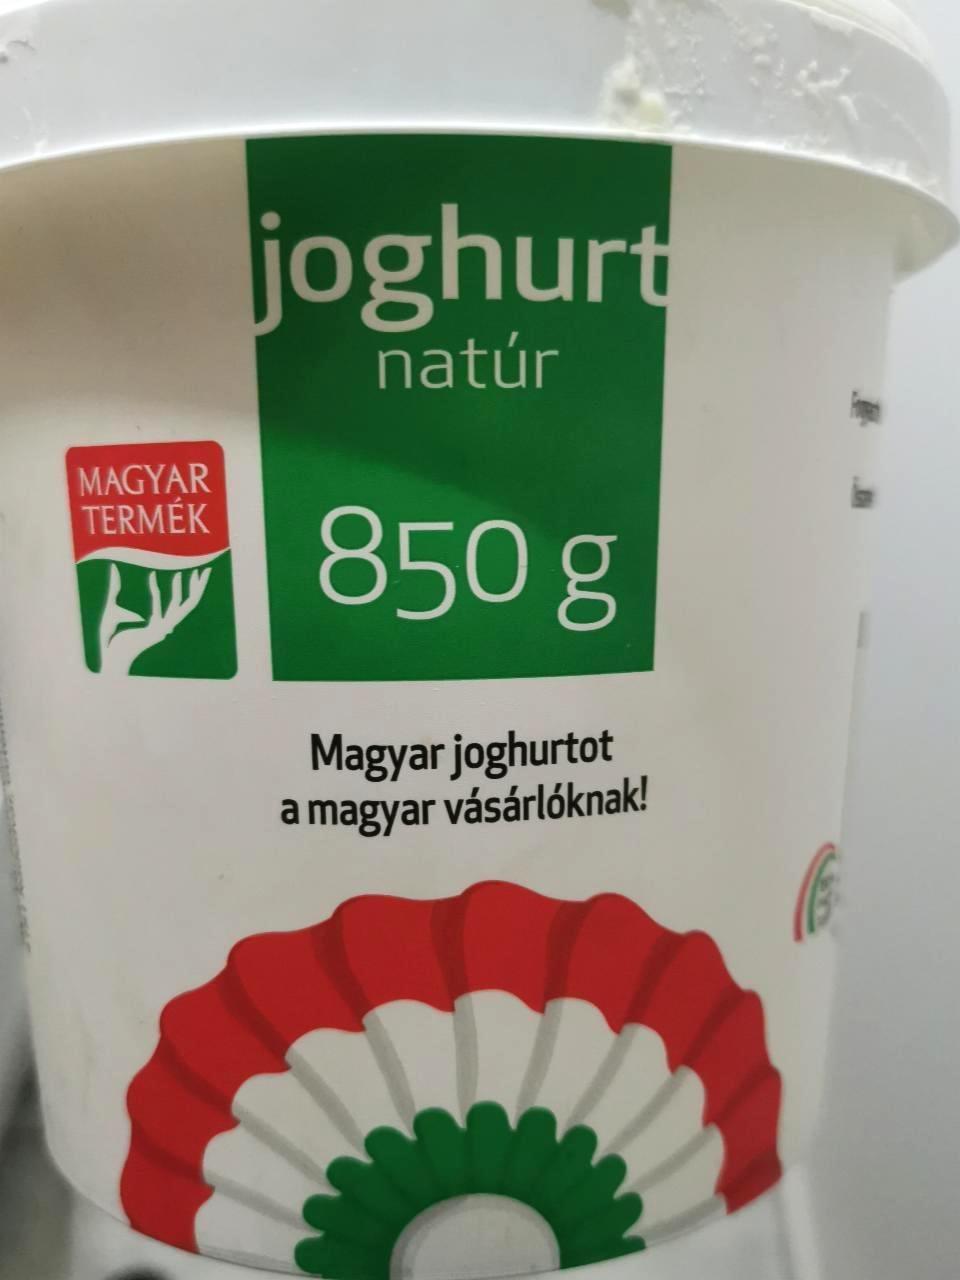 Képek - Magyar joghurt natúr 